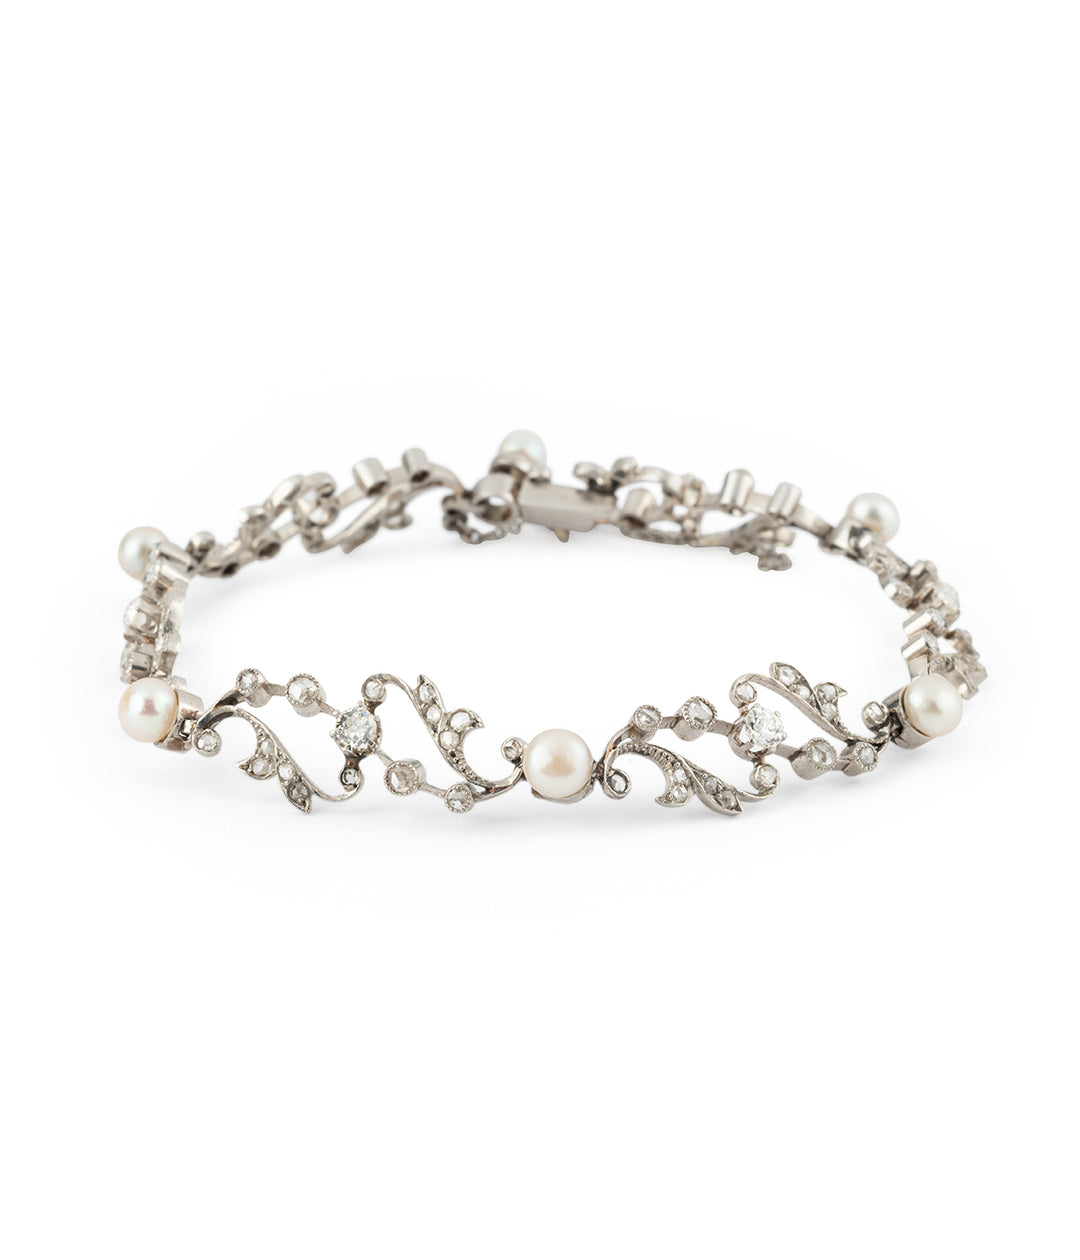 Antique pearl and diamond bracelet Pawl - Caillou Paris